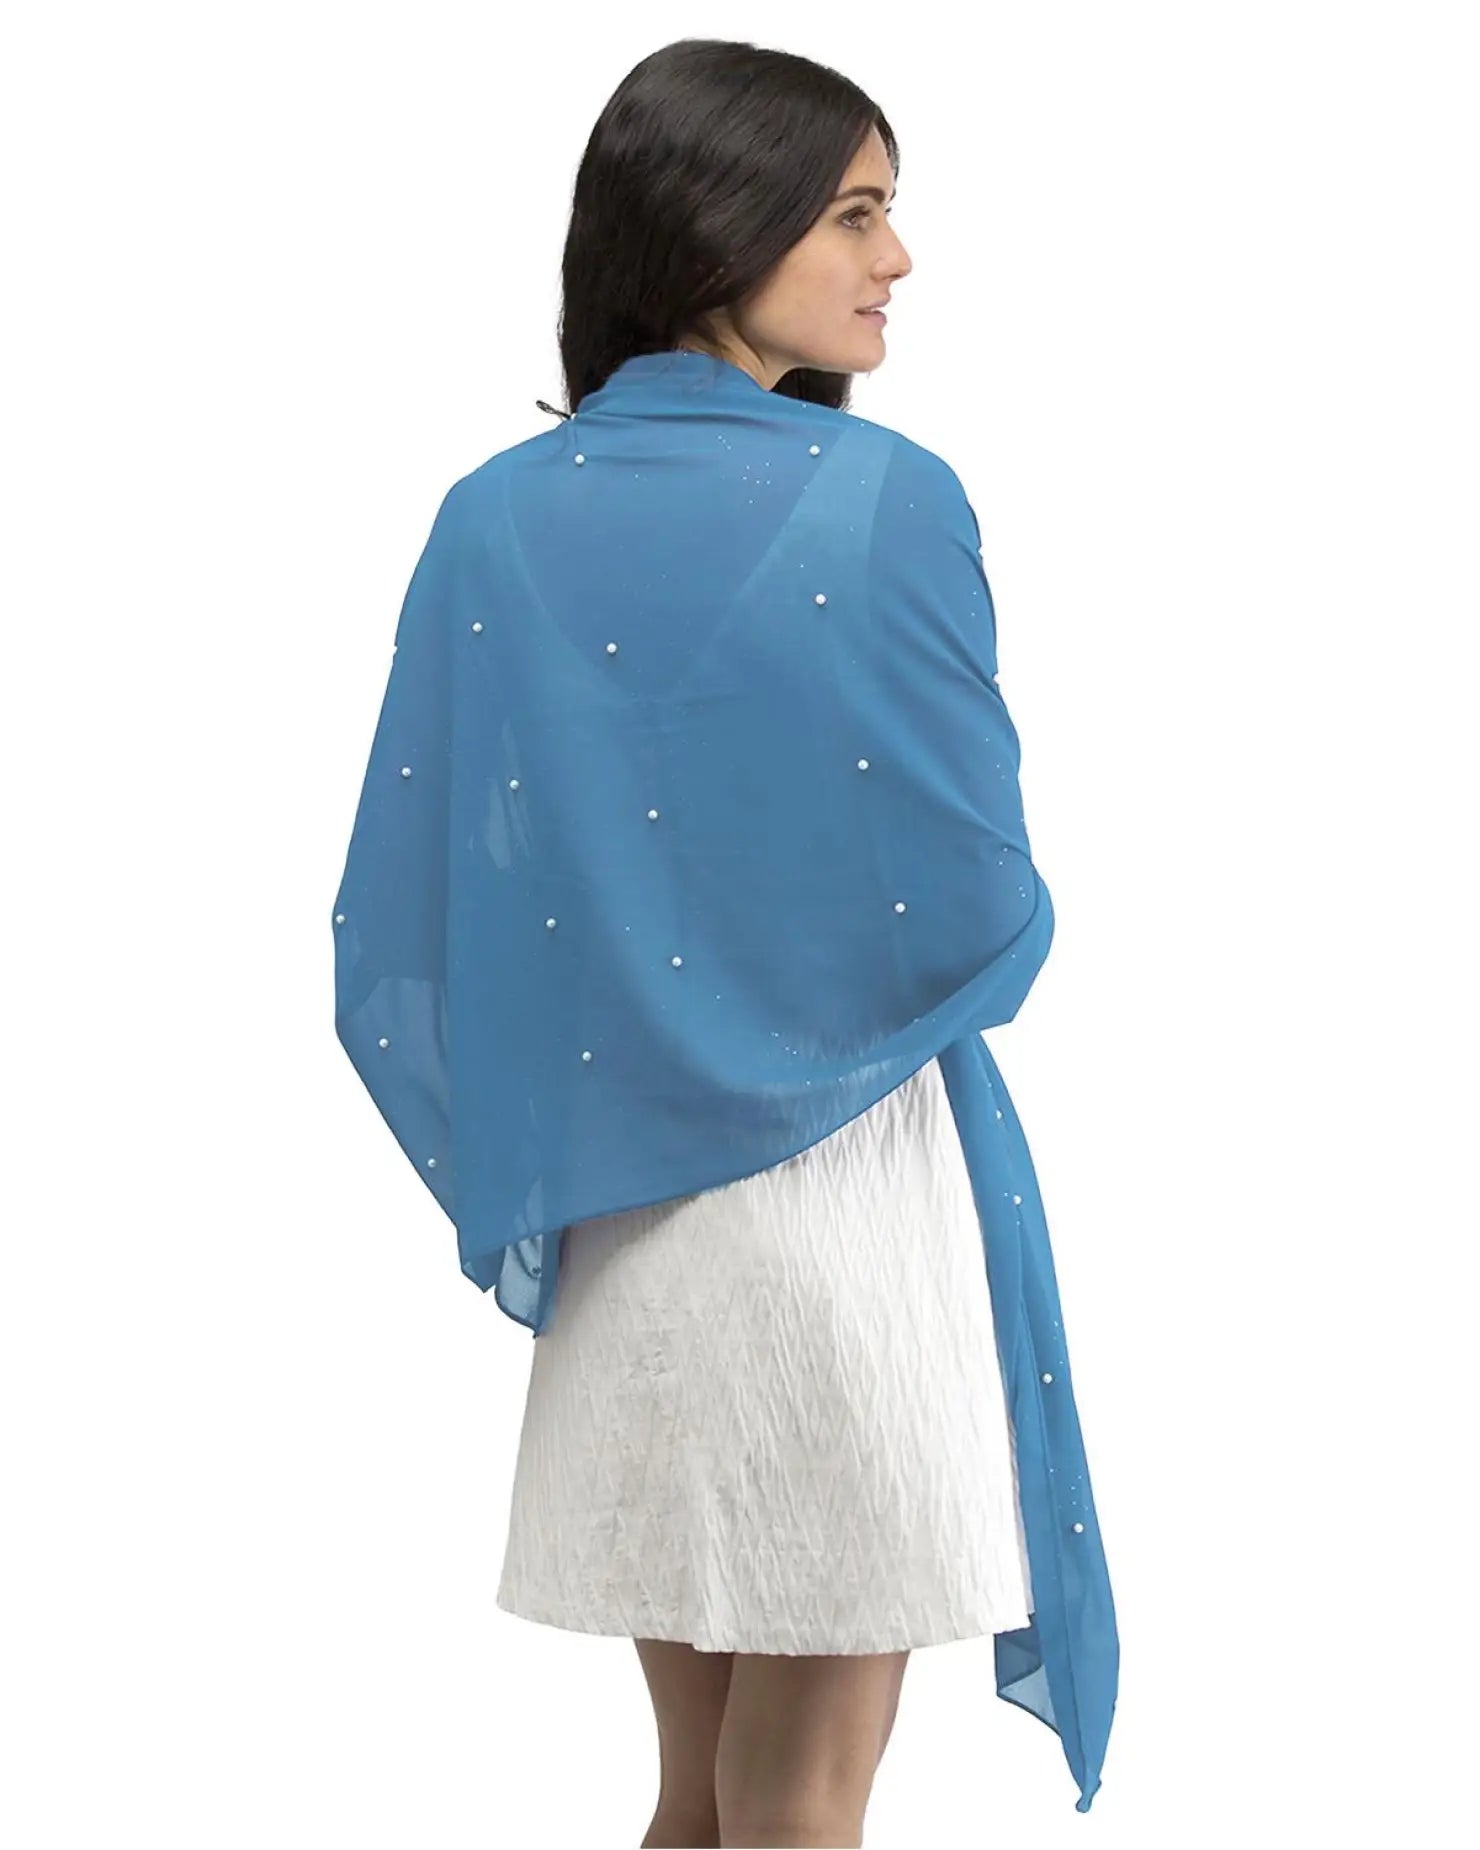 Woman wearing blue pearl-embellished chiffon shawl